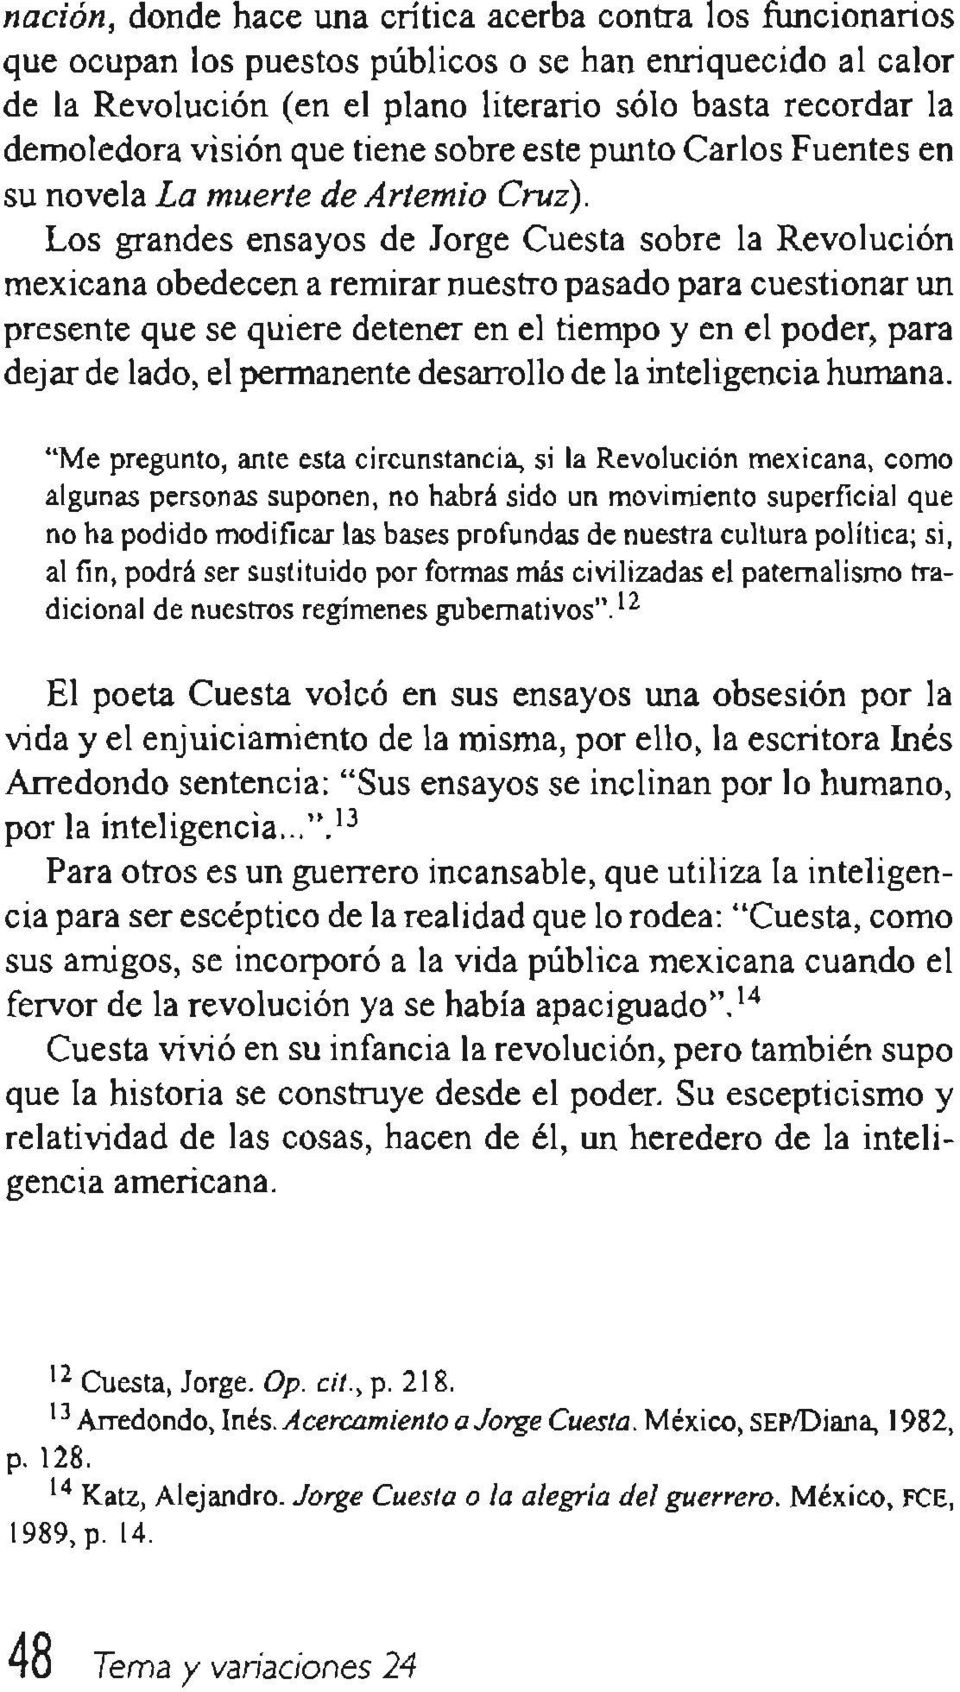 Los grandes ensayos de Jorge Cuesta sobre la Revolución mexicana obedecen a remirar nuestro pasado para cuestionar un presente que se quiere detener en el tiempo y en el poder, para dejar de lado, el